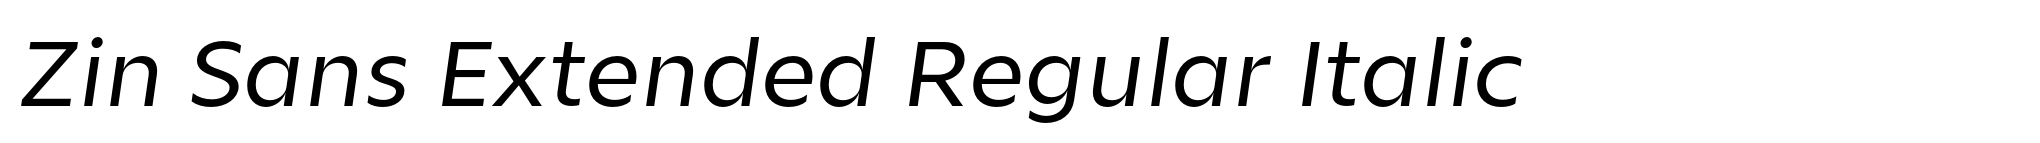 Zin Sans Extended Regular Italic image